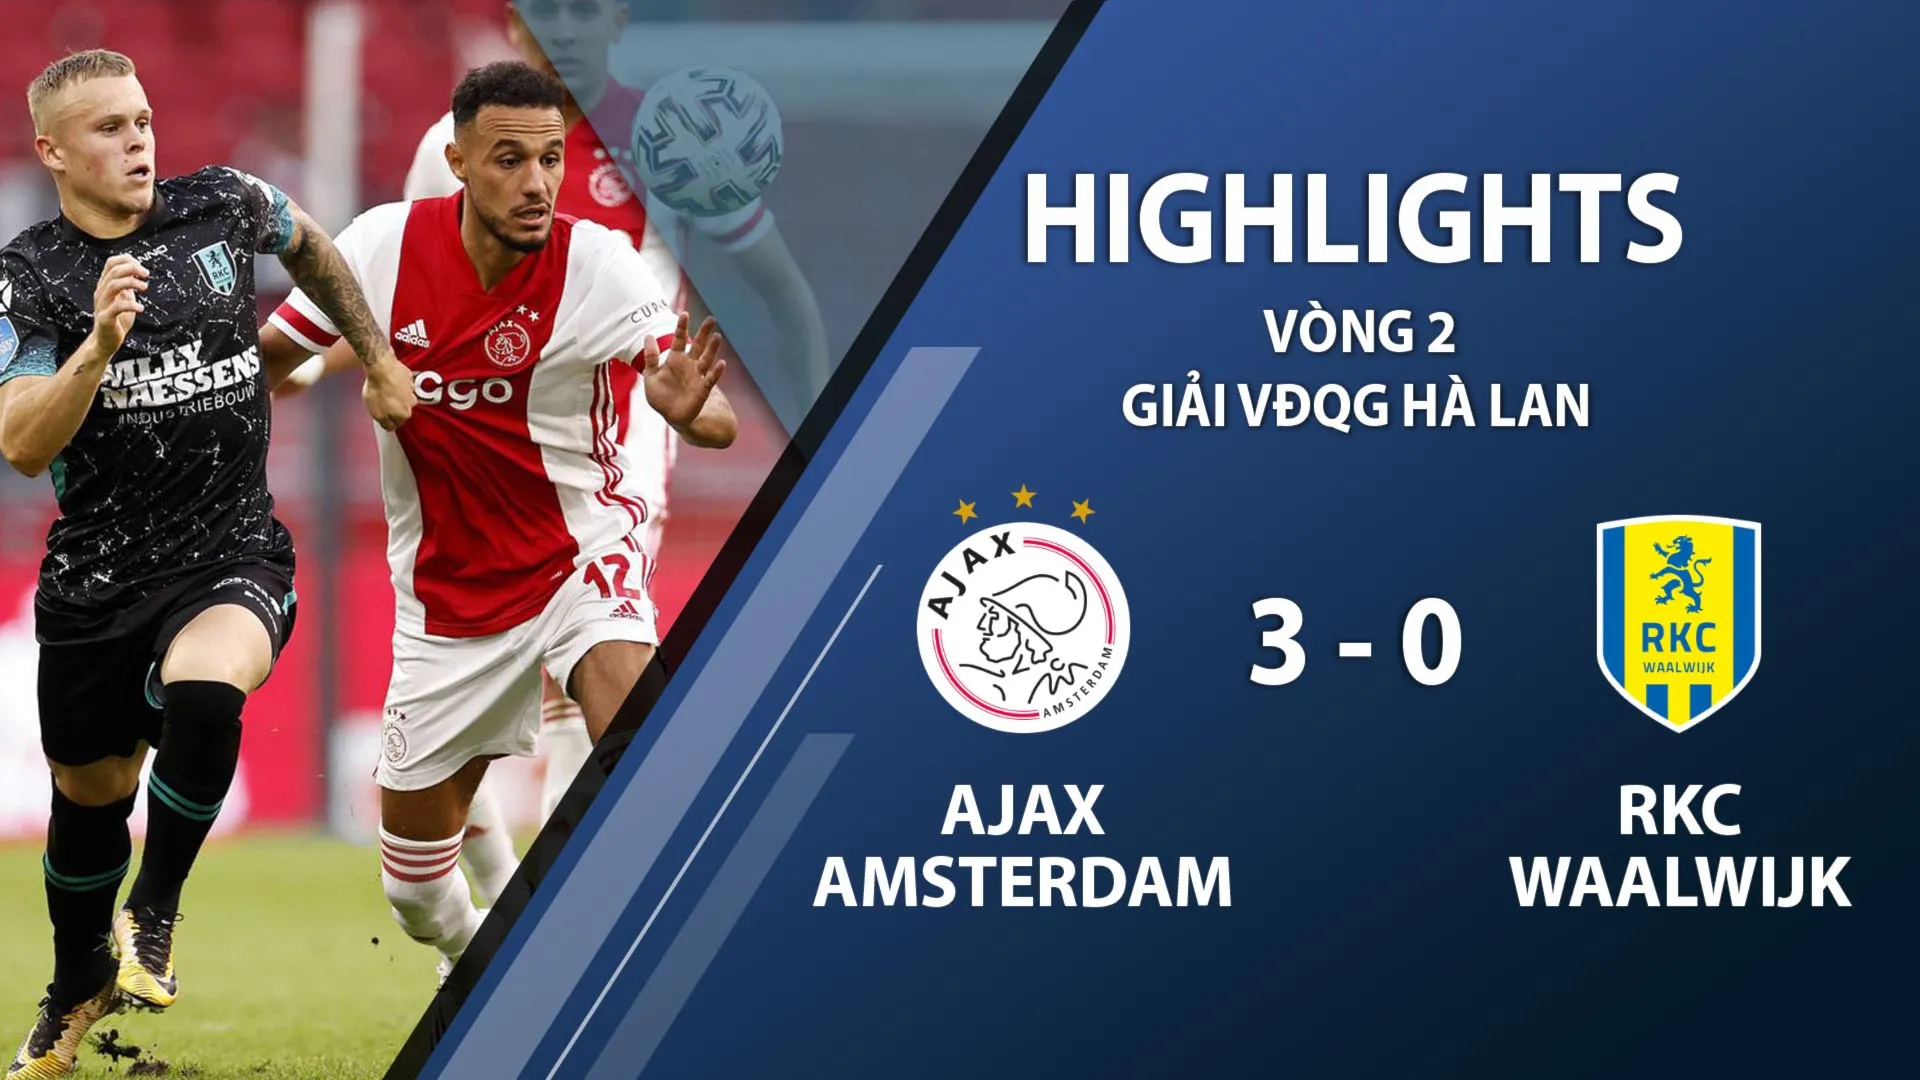 Highlights Ajax 3-0 RKC Waalwijk (vòng 2 giải VĐQG Hà Lan 2020/21)